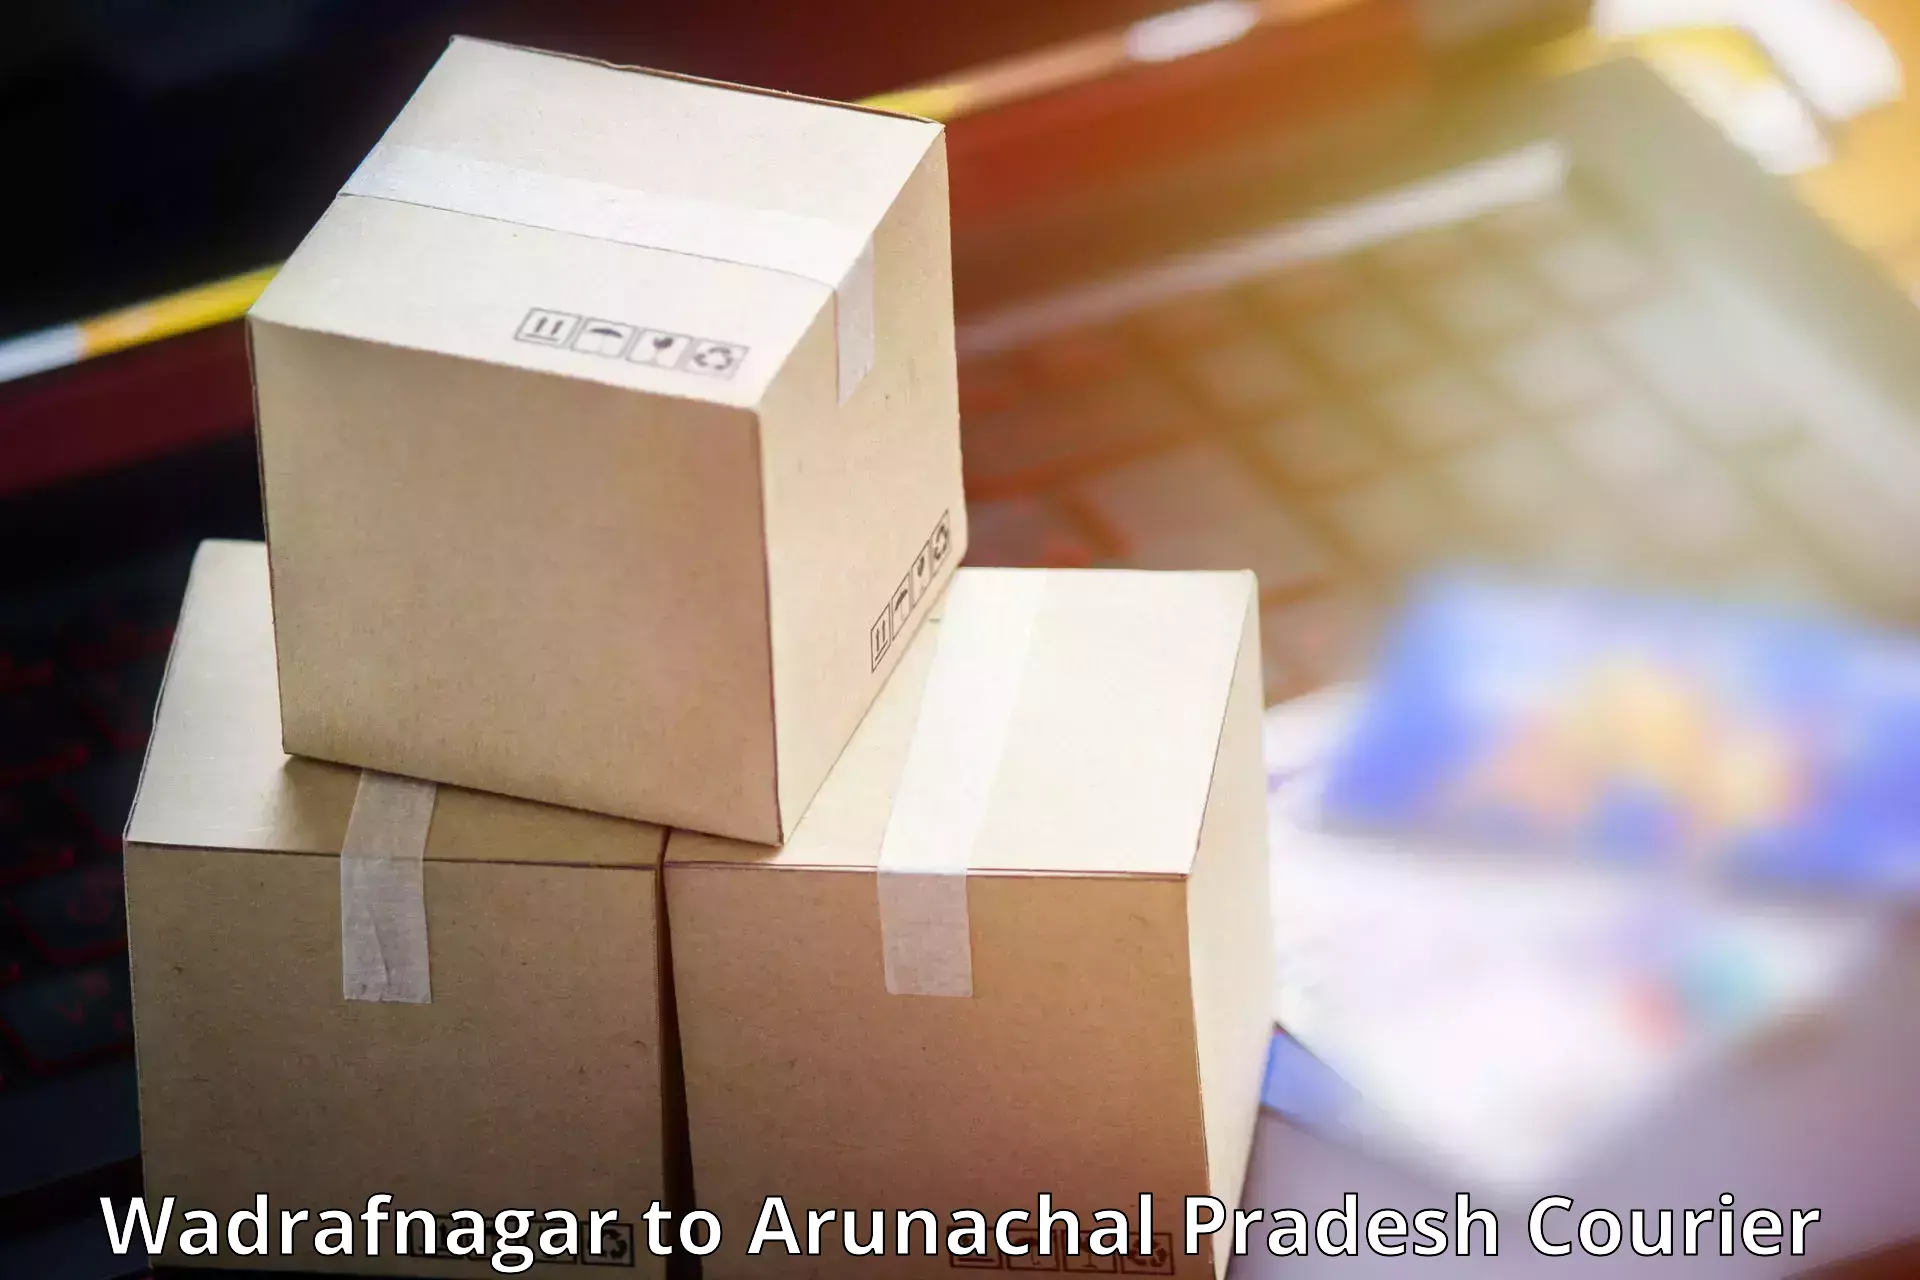 Next-generation courier services Wadrafnagar to Itanagar